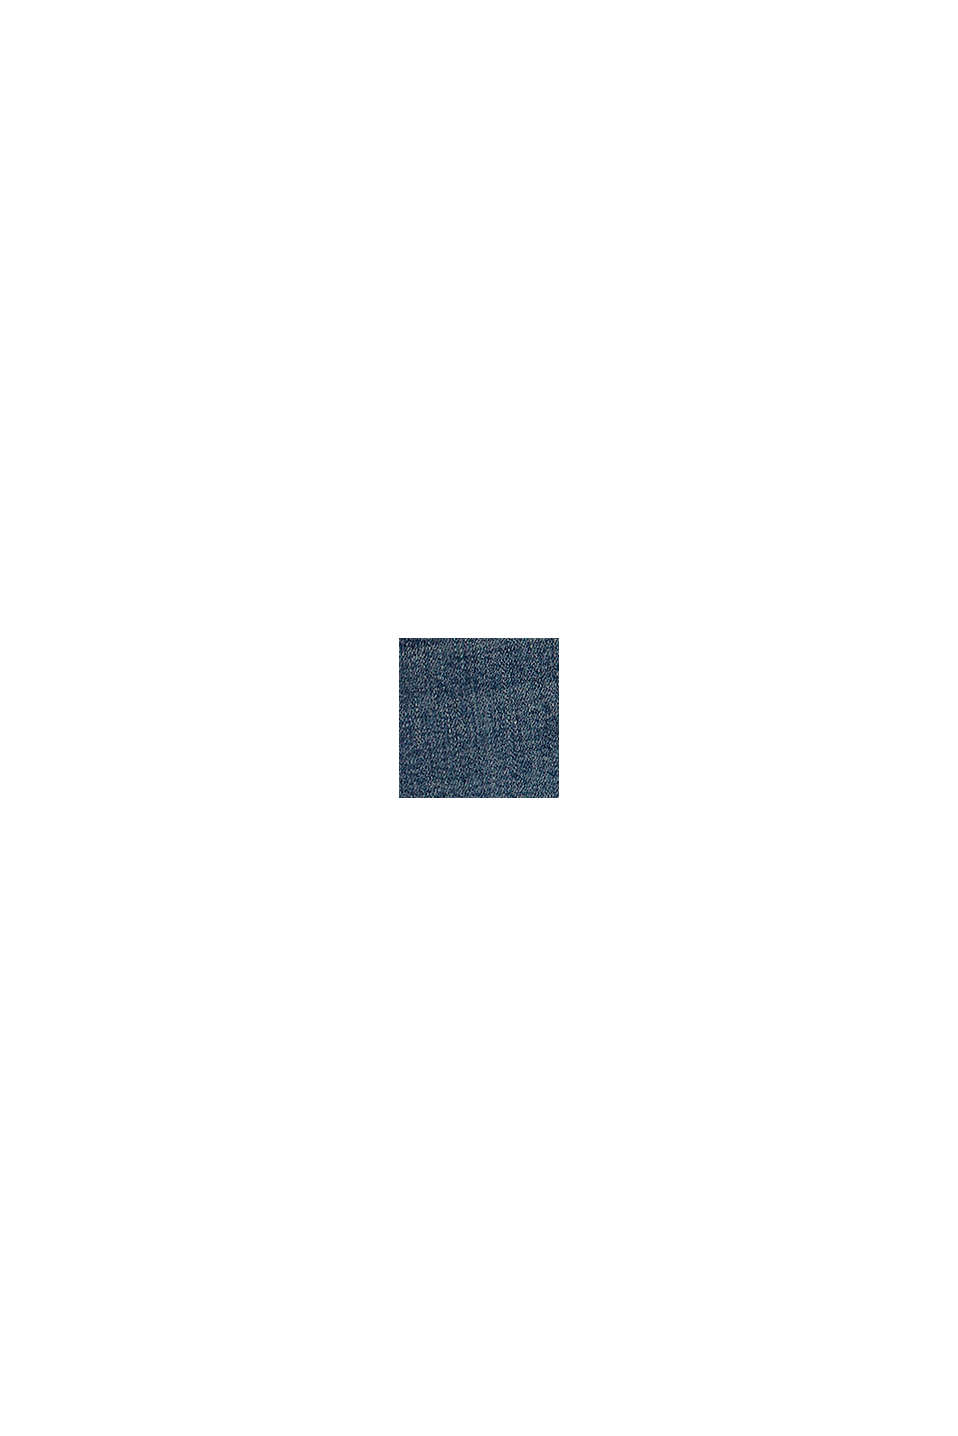 In materiale riciclato: jeans elasticizzati con cintura regolabile, BLUE MEDIUM WASHED, swatch